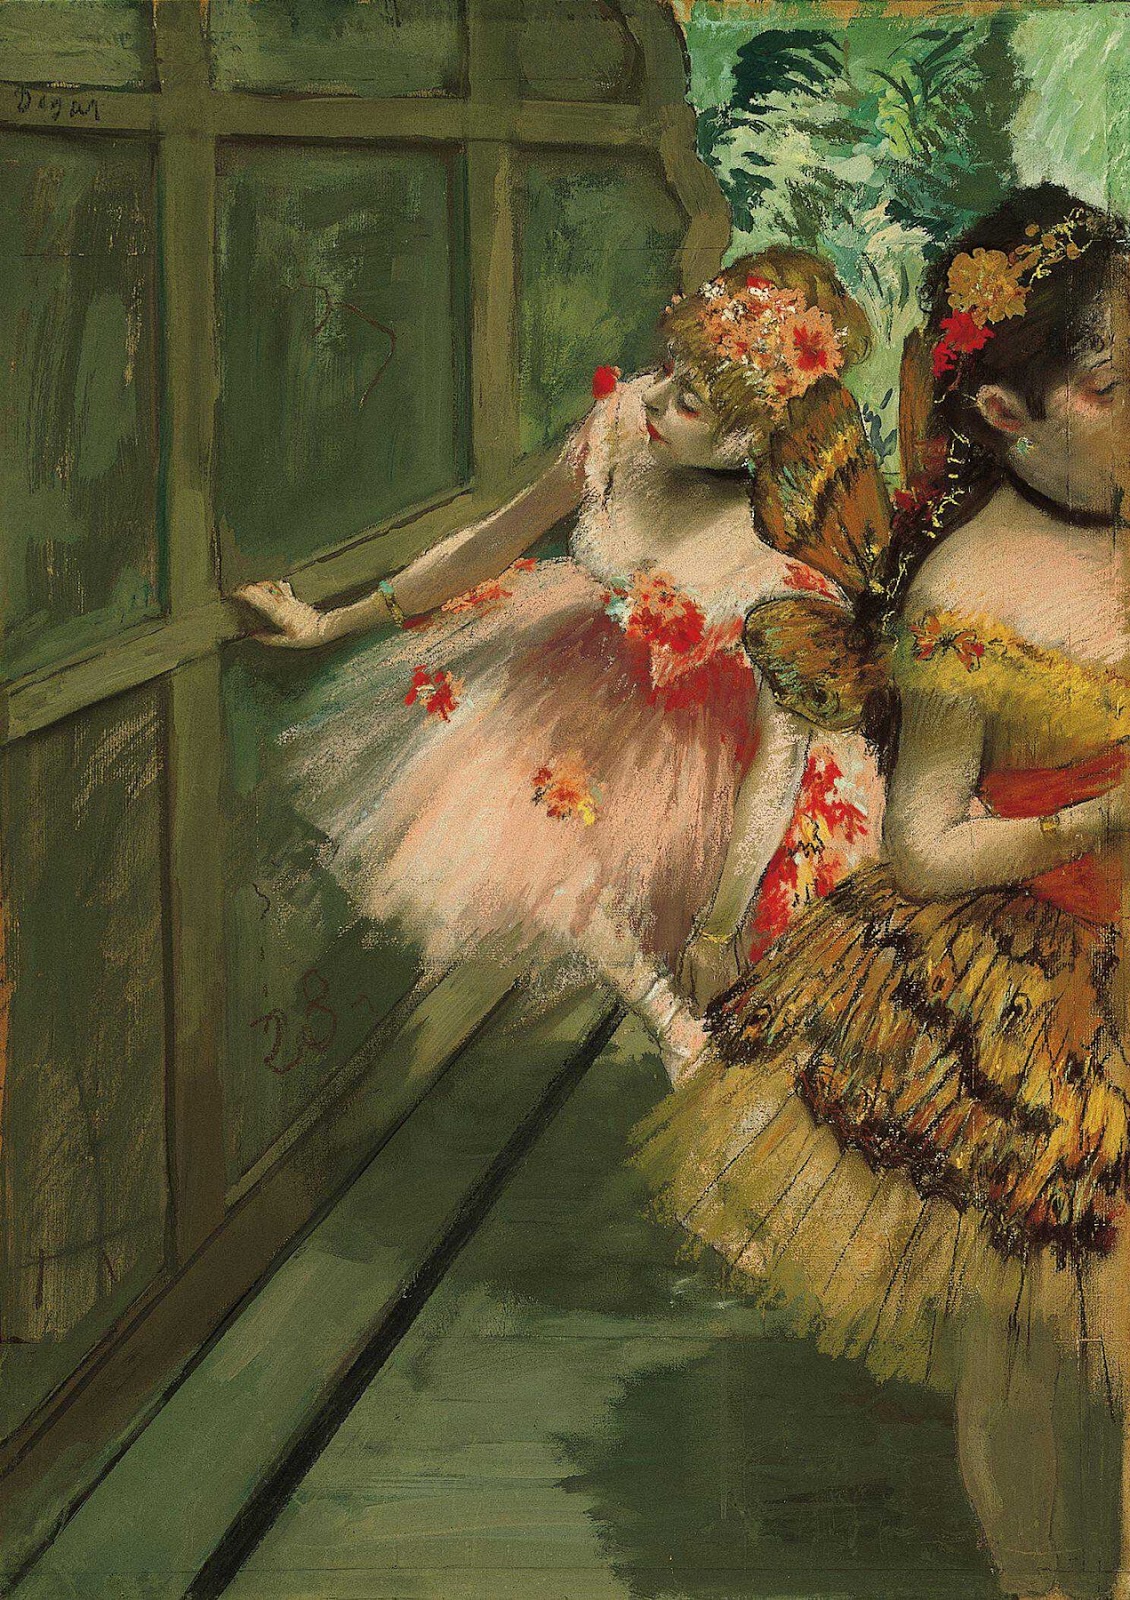 Danseressen in de coulissen by Edgar Degas - omstreeks 1876-1878 - 69.2 x 50.2 cm 